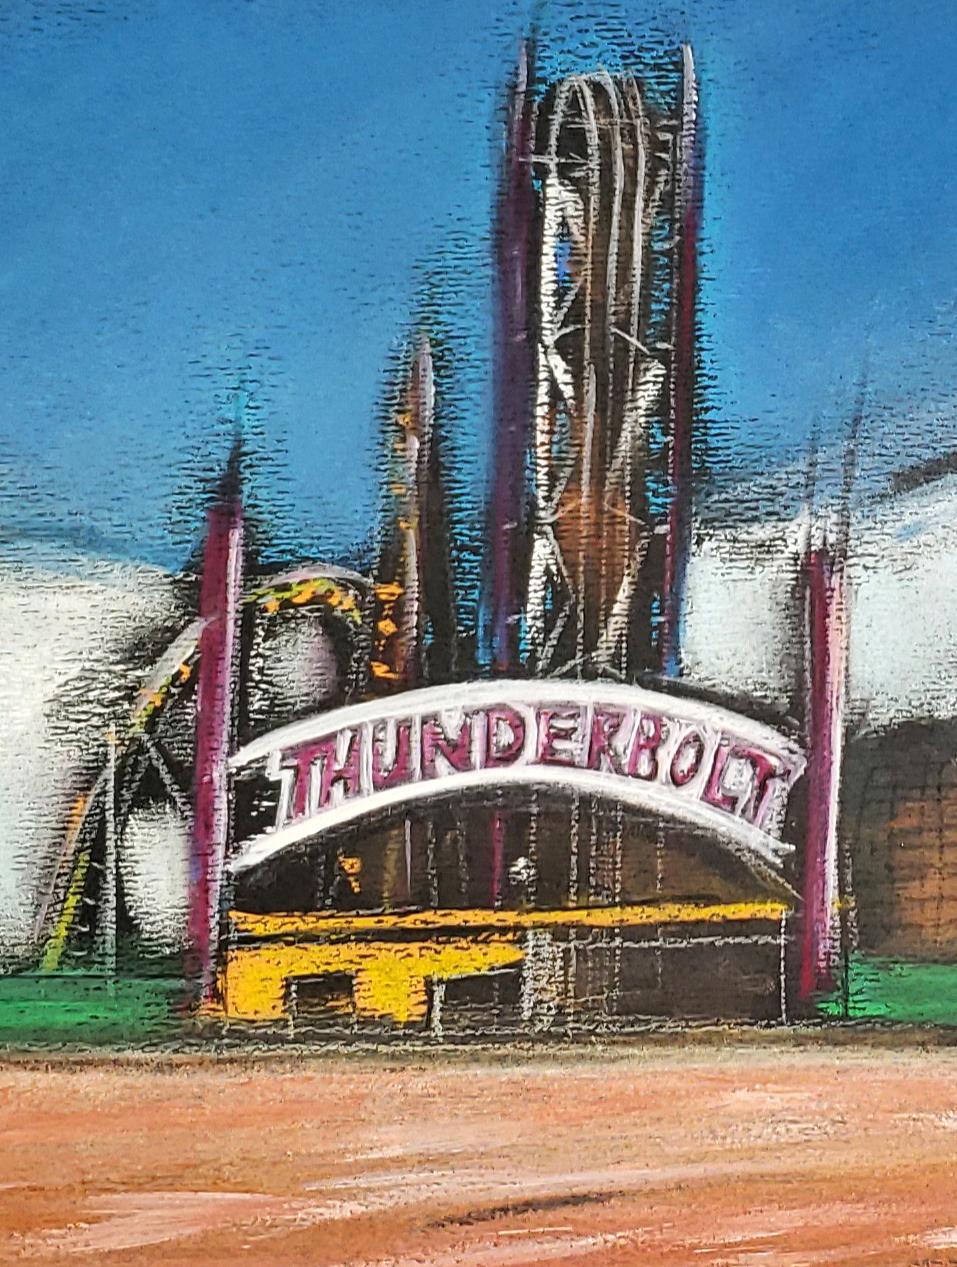 Thunderbolt, Coney Island, farbenfrohes Pastell mit historischem Vergnügenpark (Expressionismus), Art, von Janet Morgan